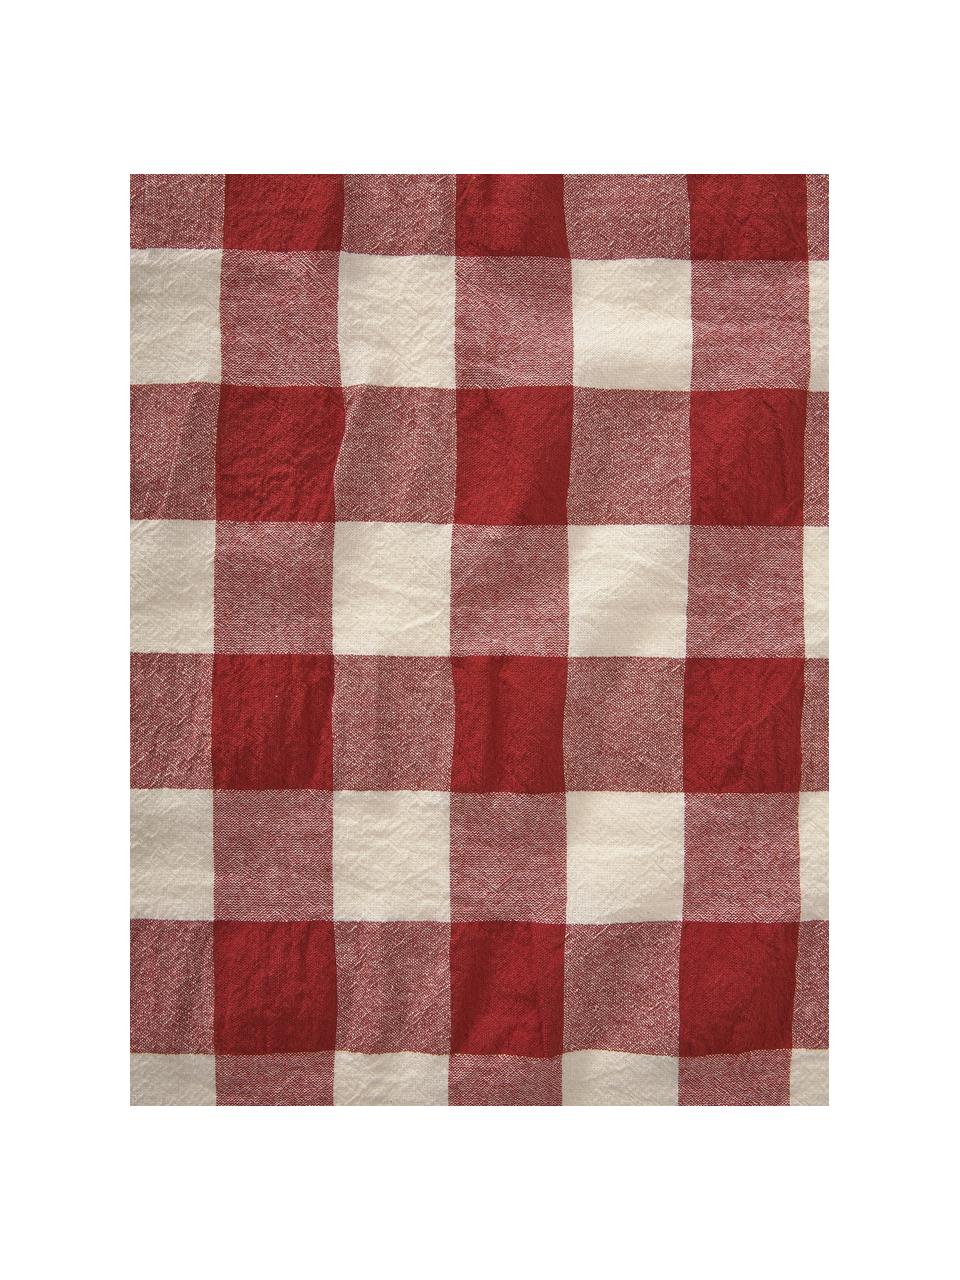 Katoenen tafelkleed Ester, 100% katoen, Rood, wit, geruit, Voor 6 - 10 personen (B 145 x L 250 cm)